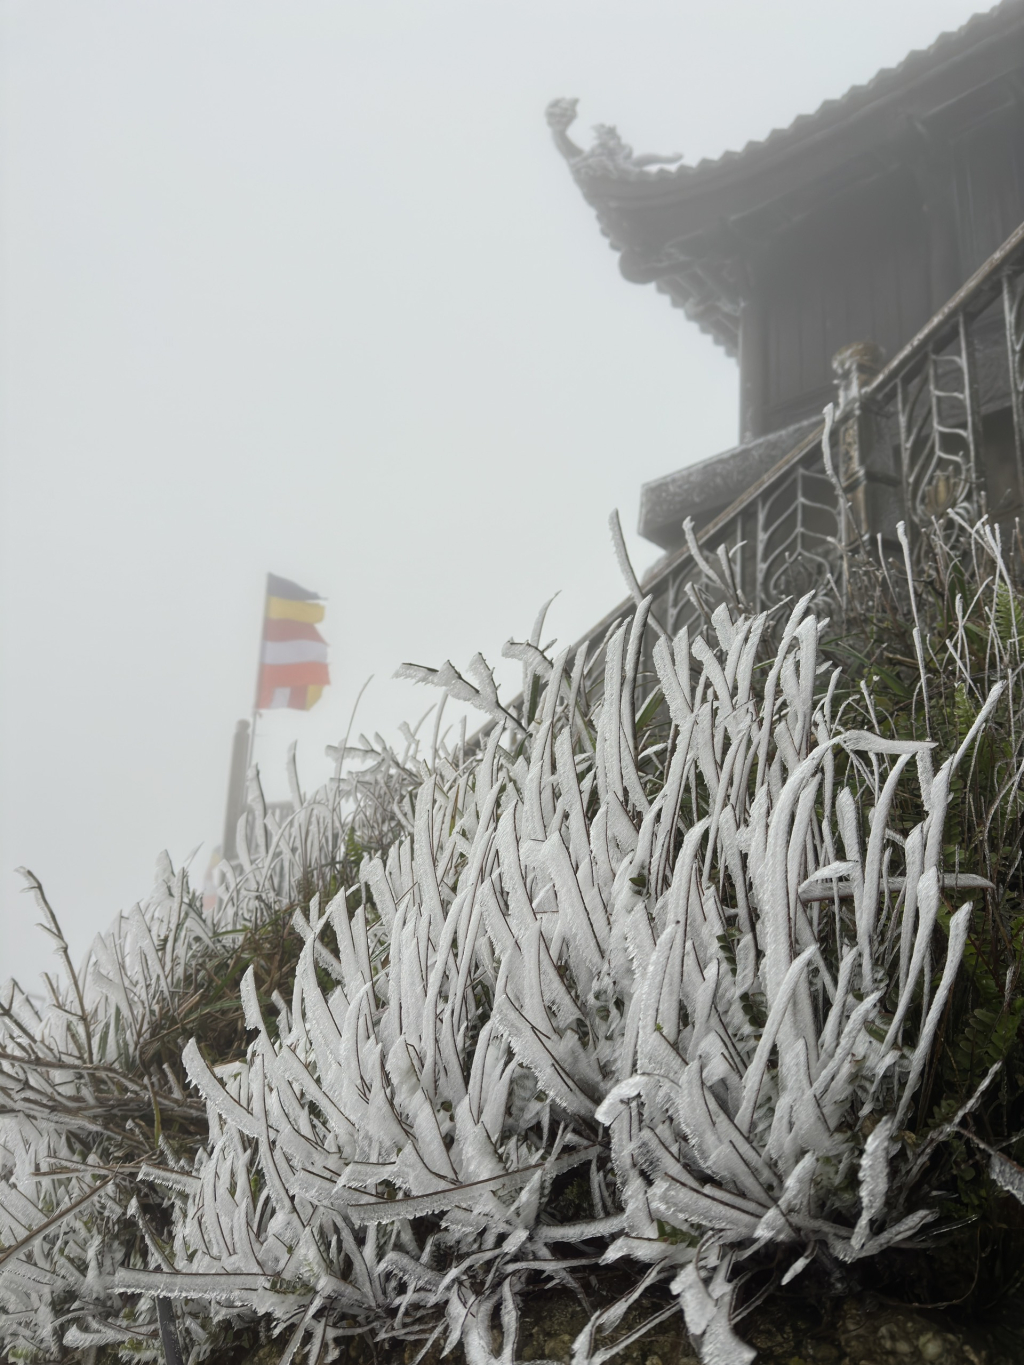 đỉnh Mẫu Sơn đang đóng băng rất dày